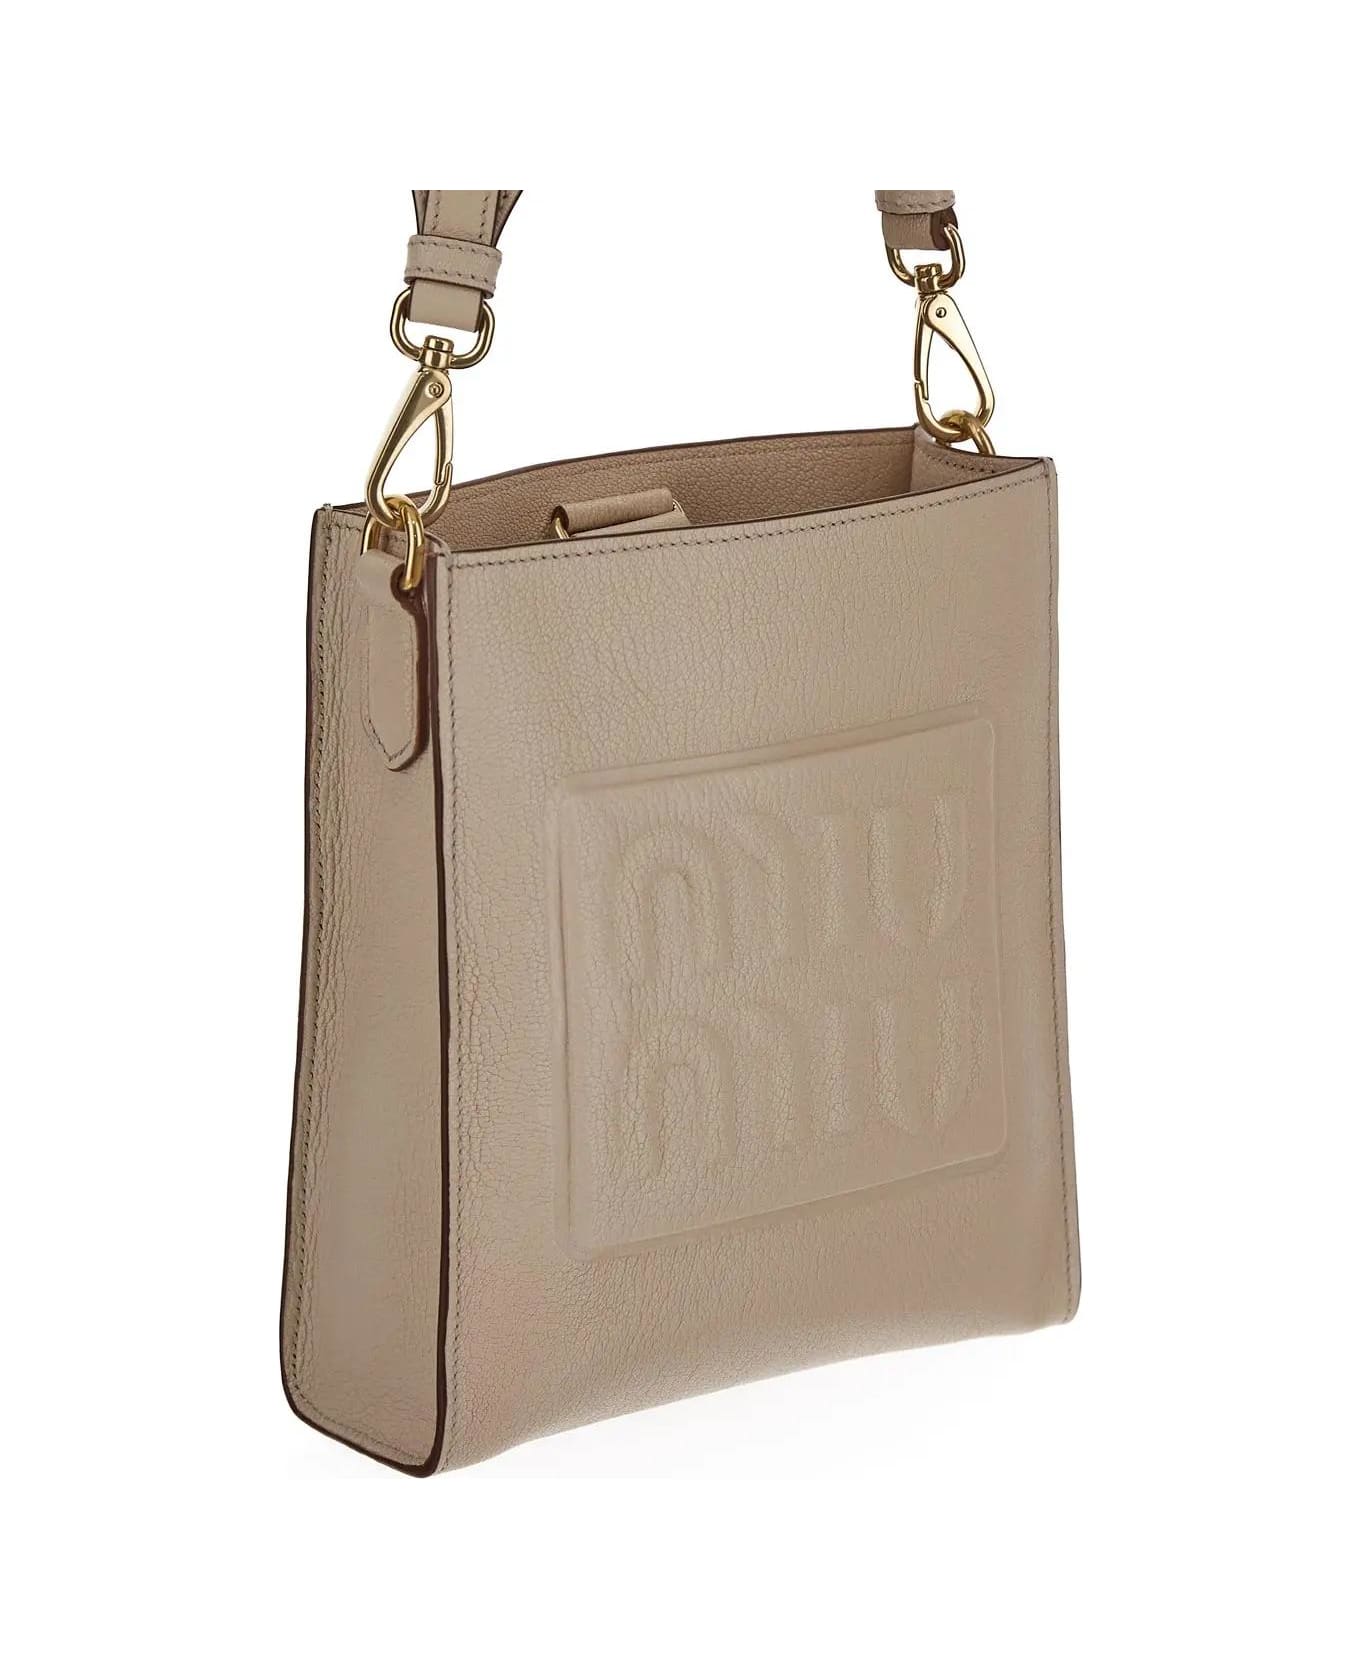 Miu Miu Leather Bag - LINO